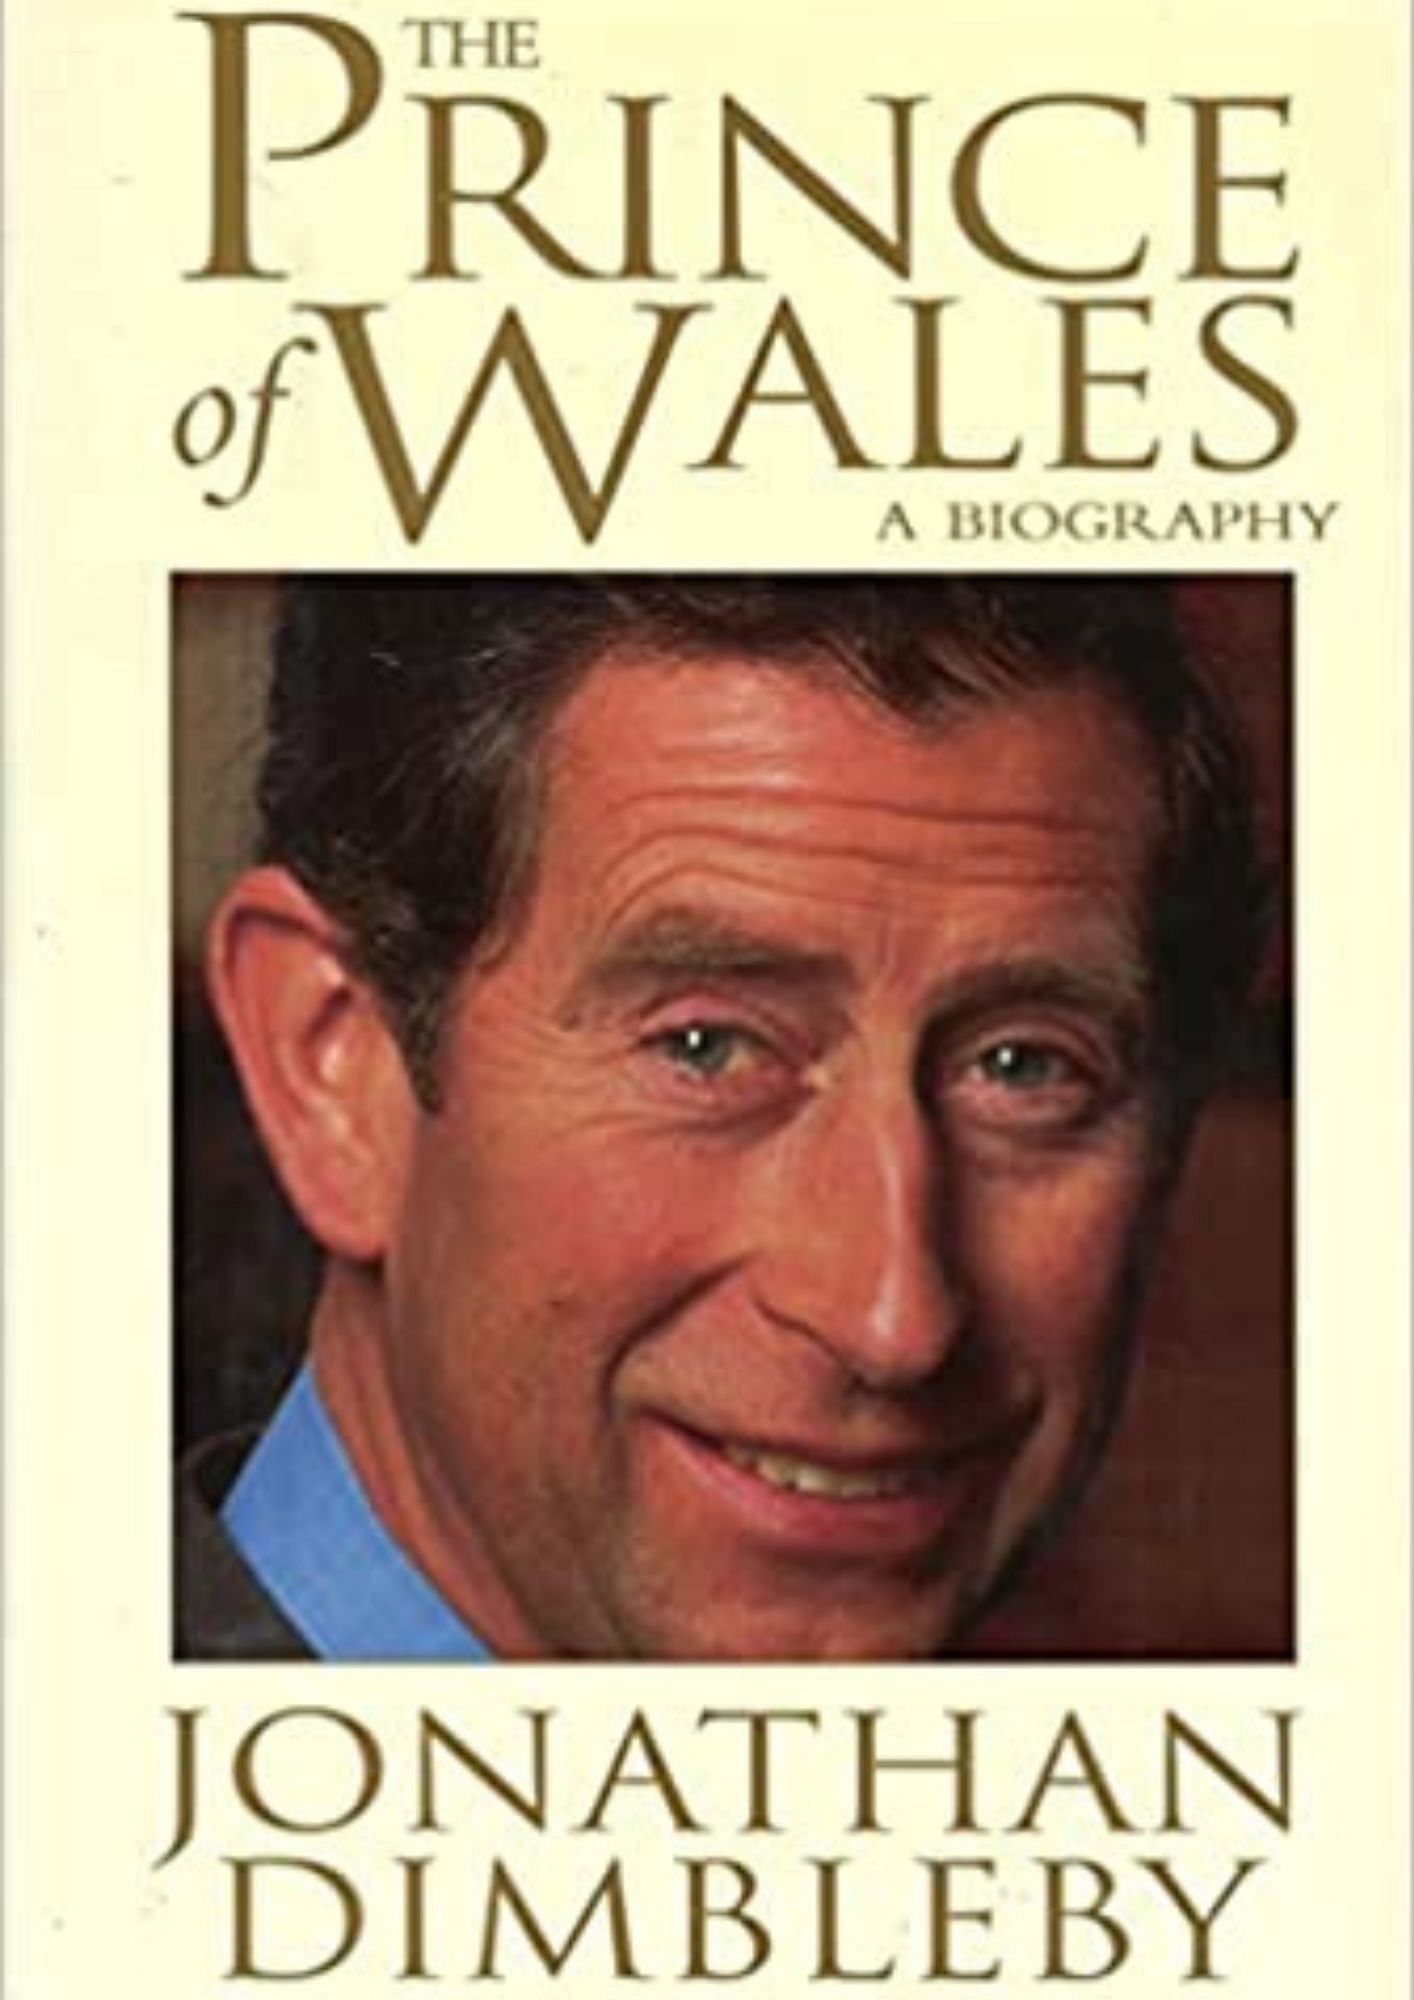 Prince of Wales (Image via Amazon)